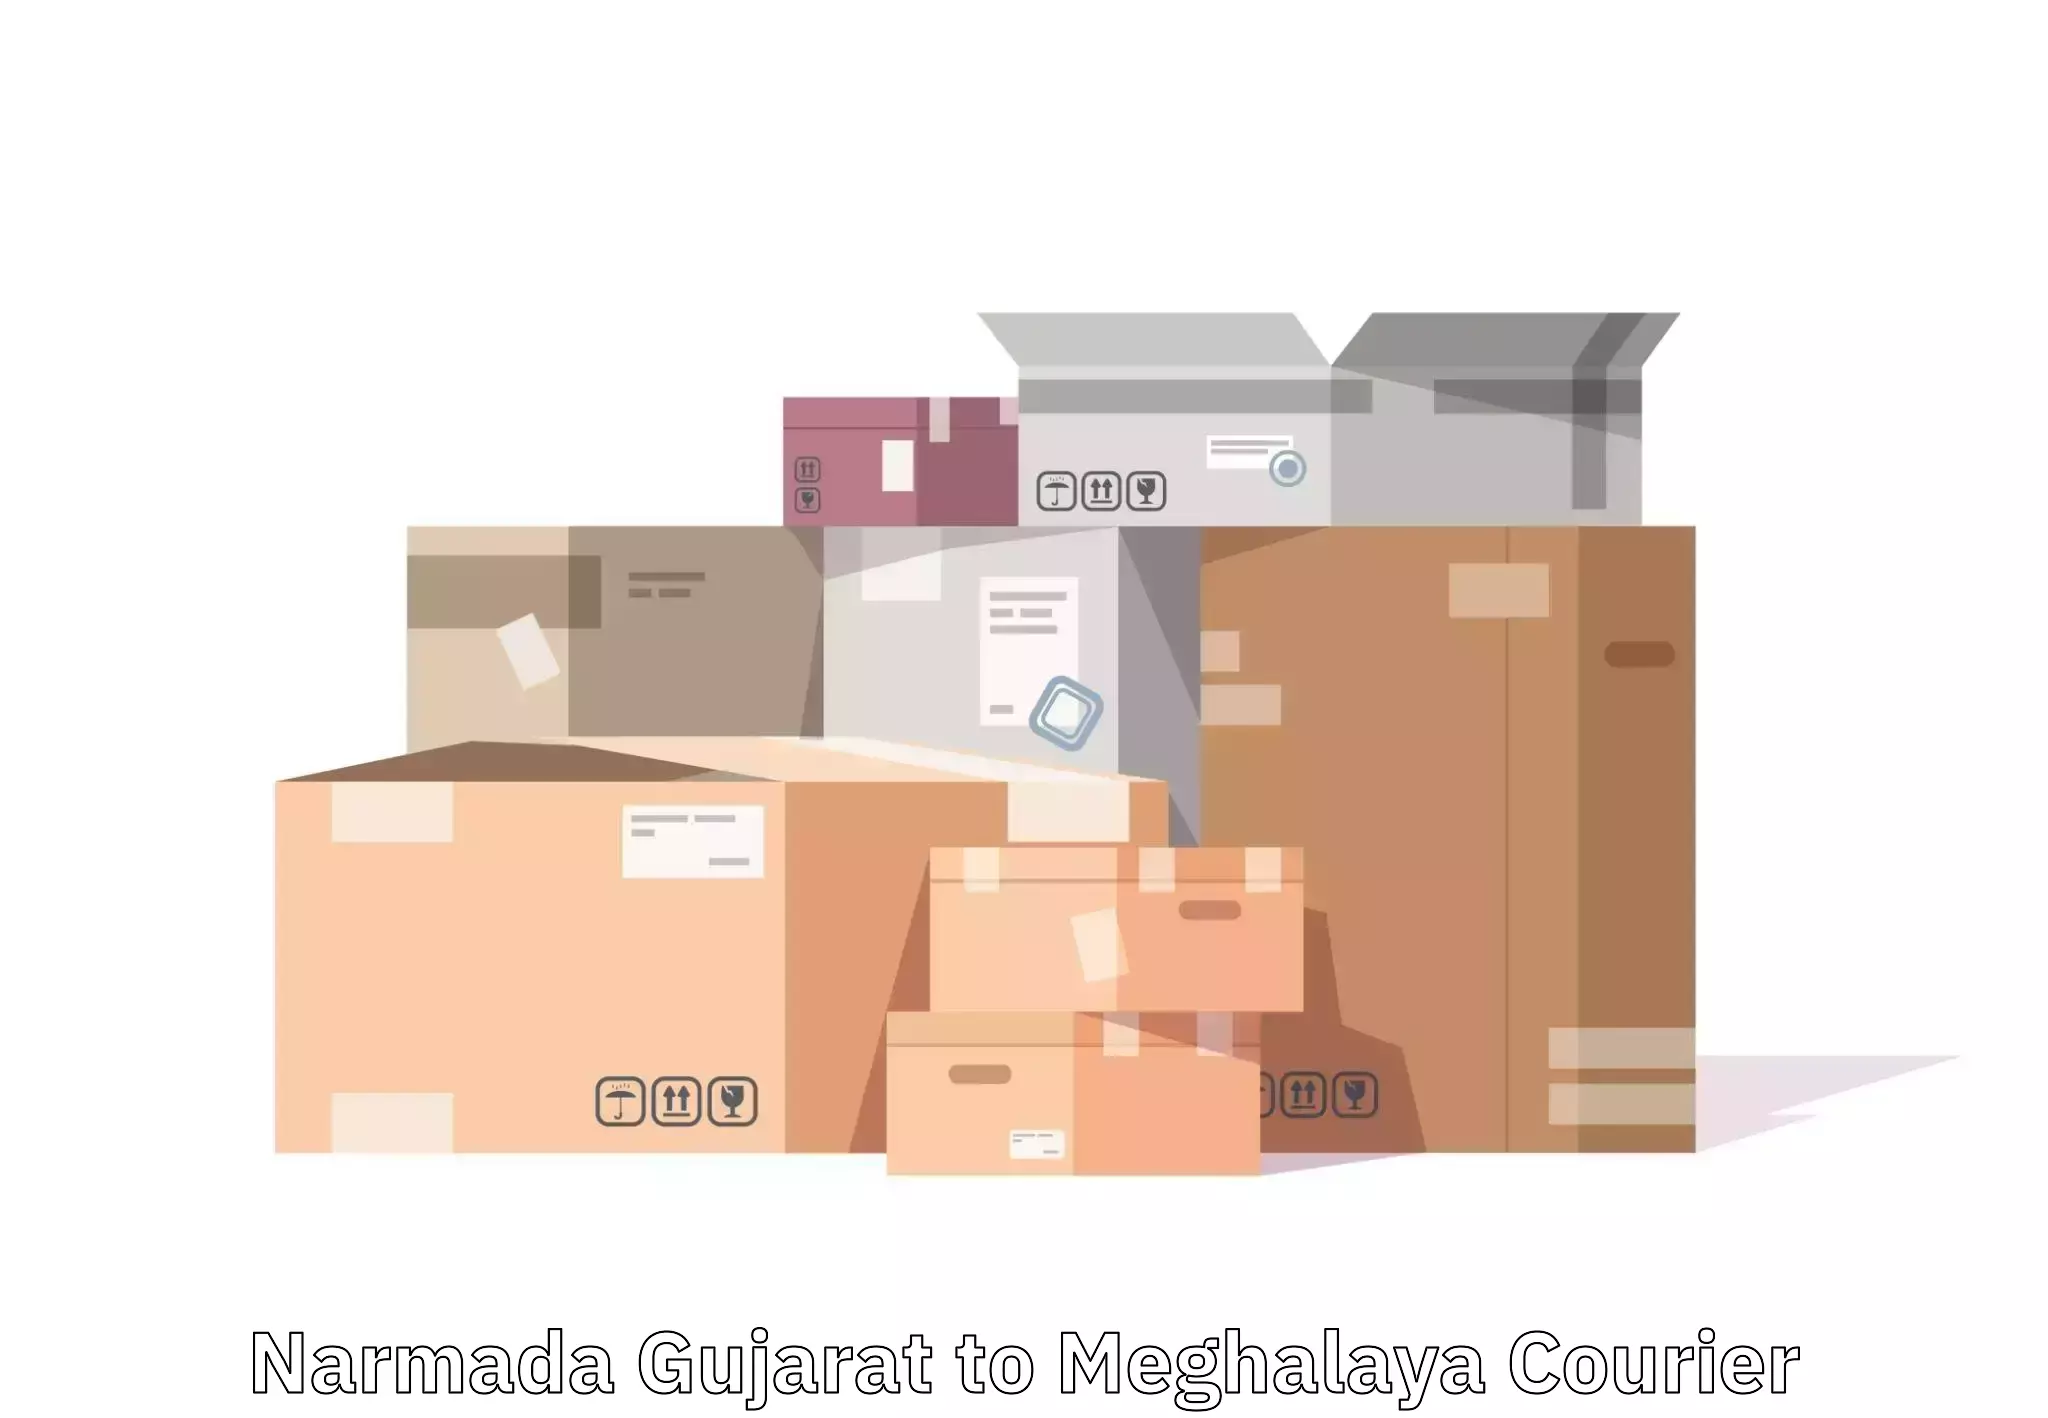 Local baggage delivery Narmada Gujarat to Shillong